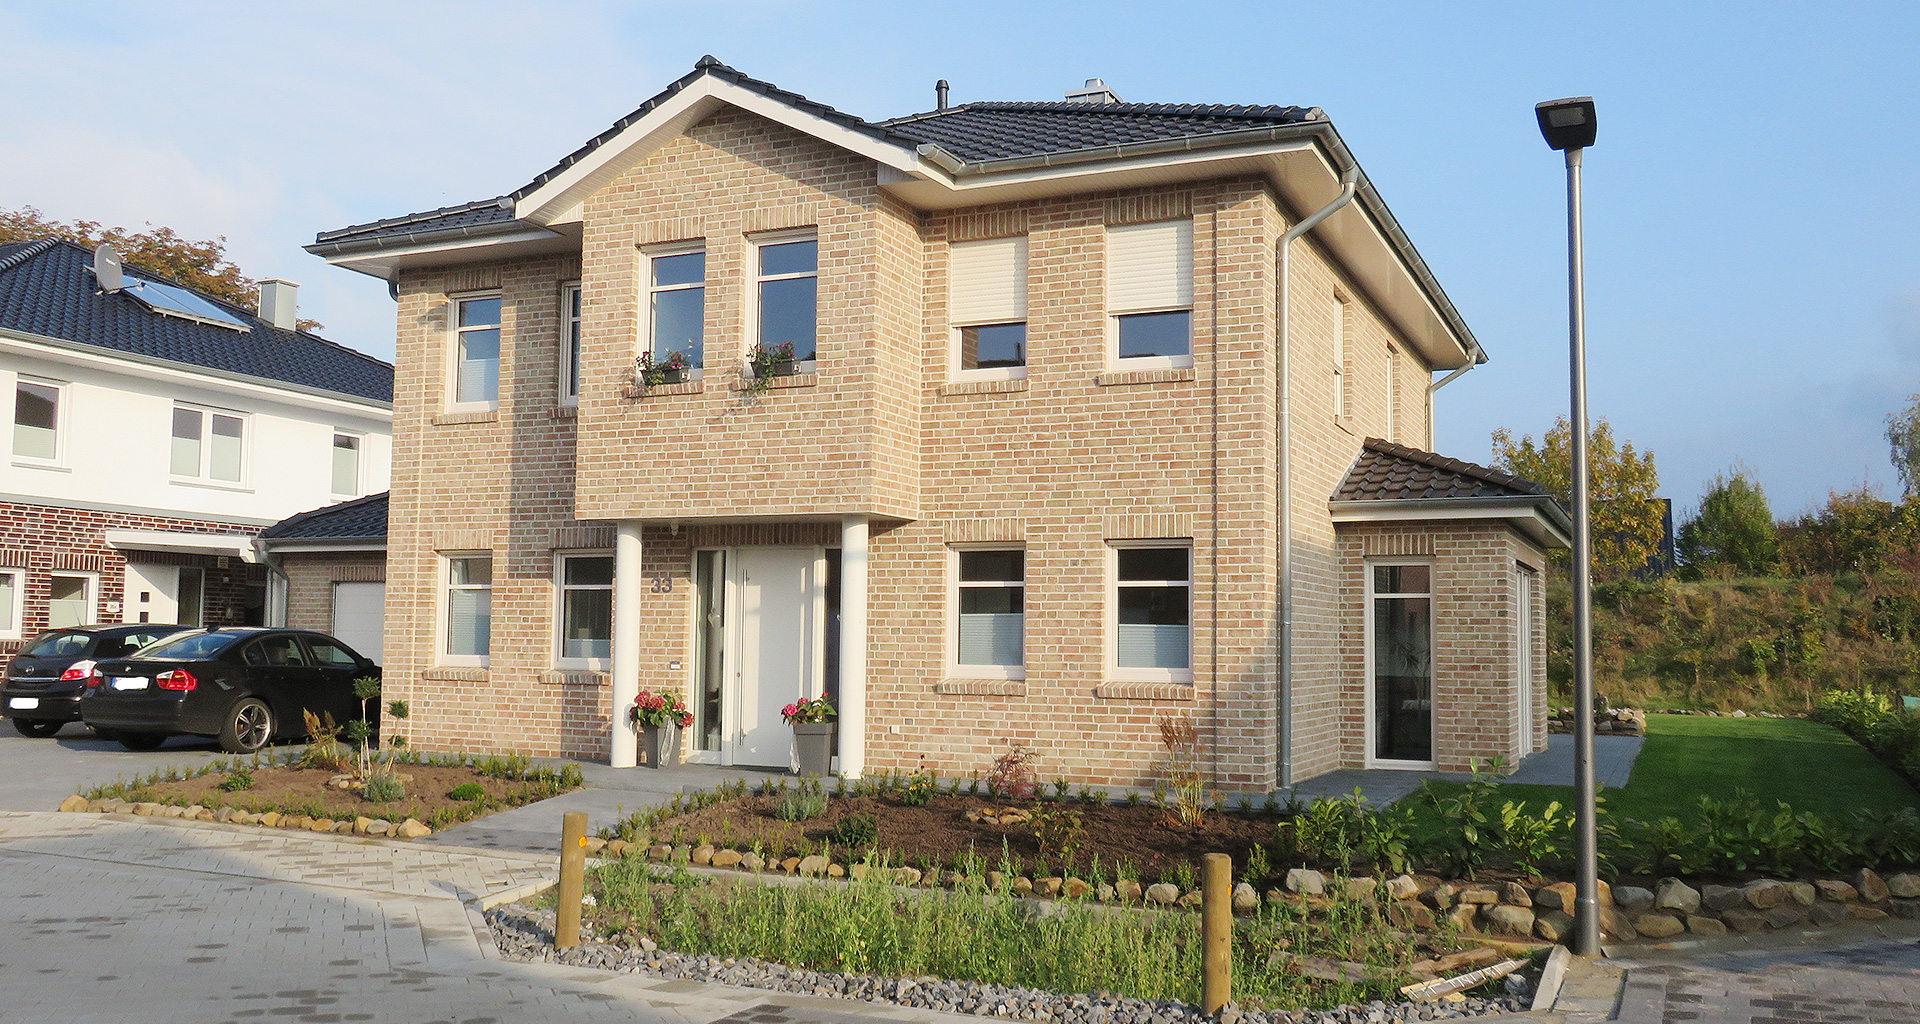 Einfamilienhauses rechte Seite mit Eingang in Wietmarschen-Lohne Emsland 2015